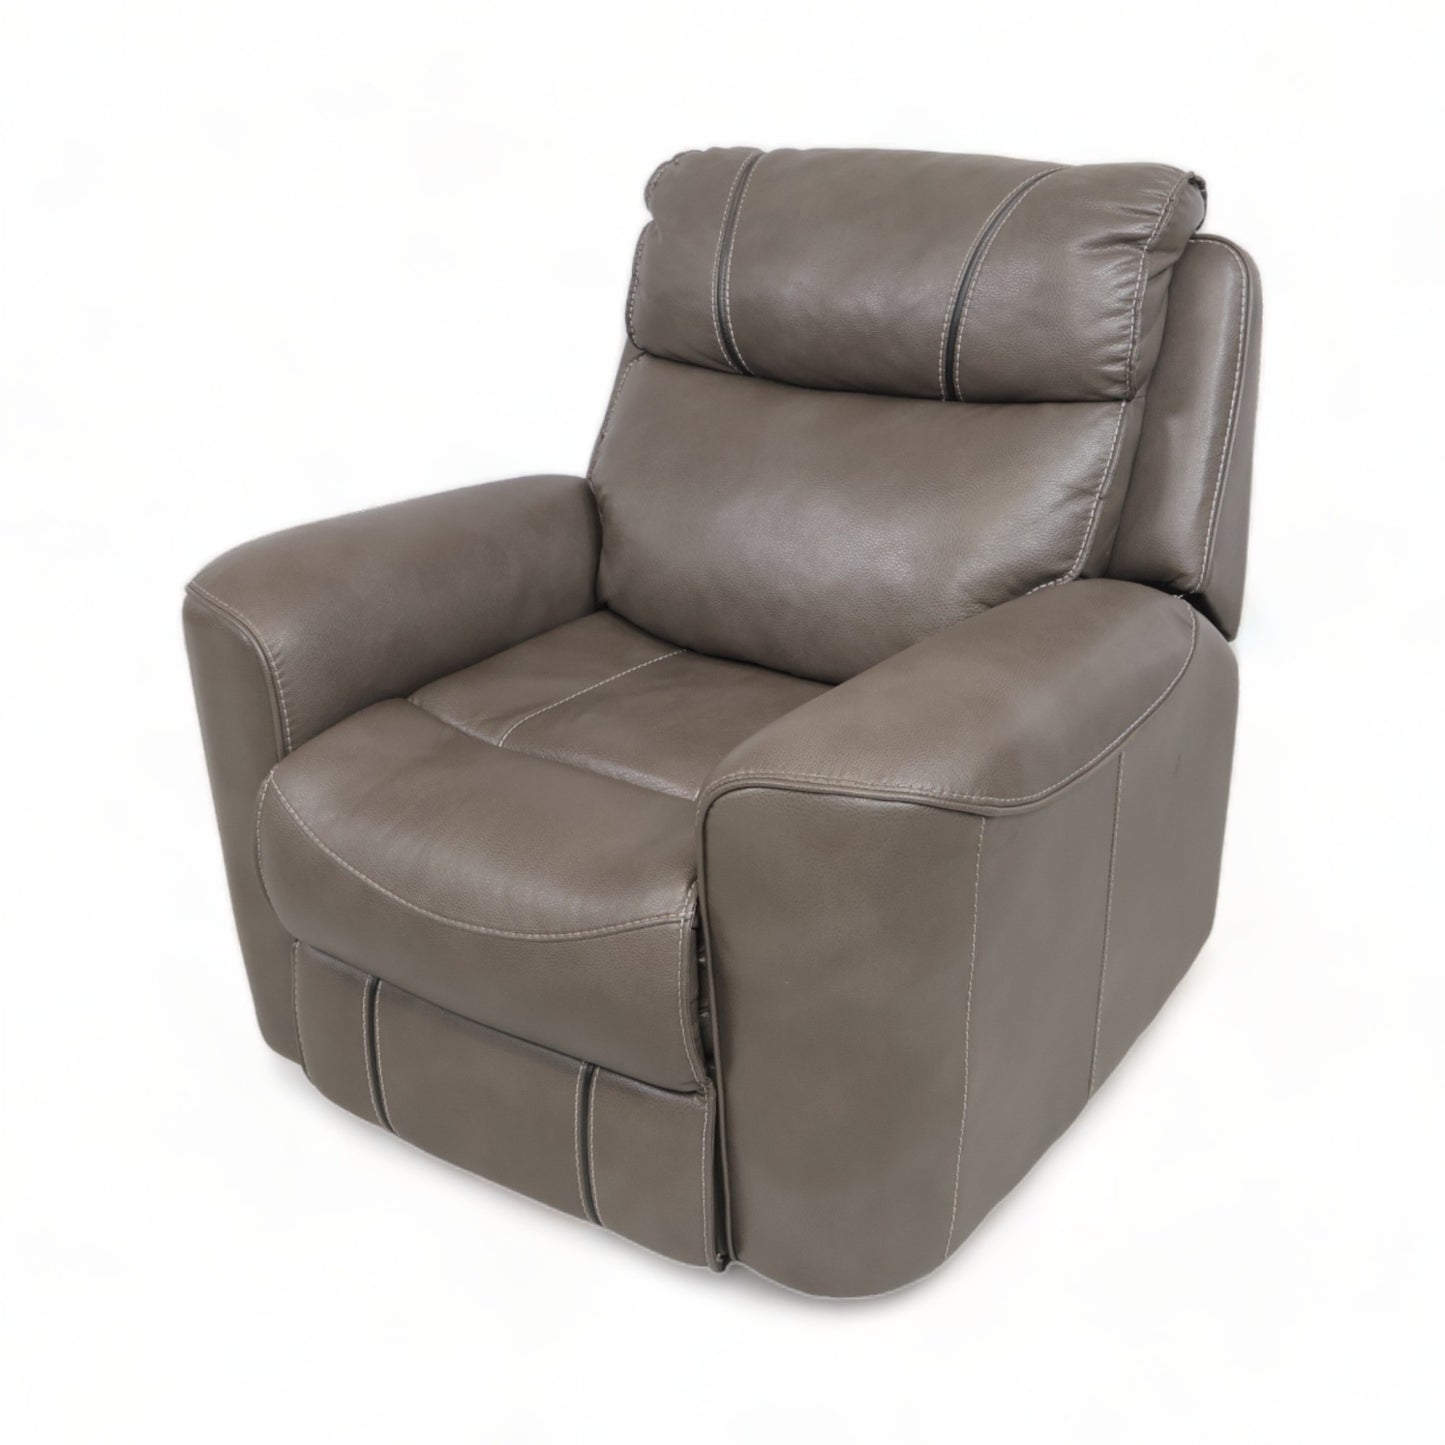 Nyrenset | Brun/grå stol med recliner i skinn